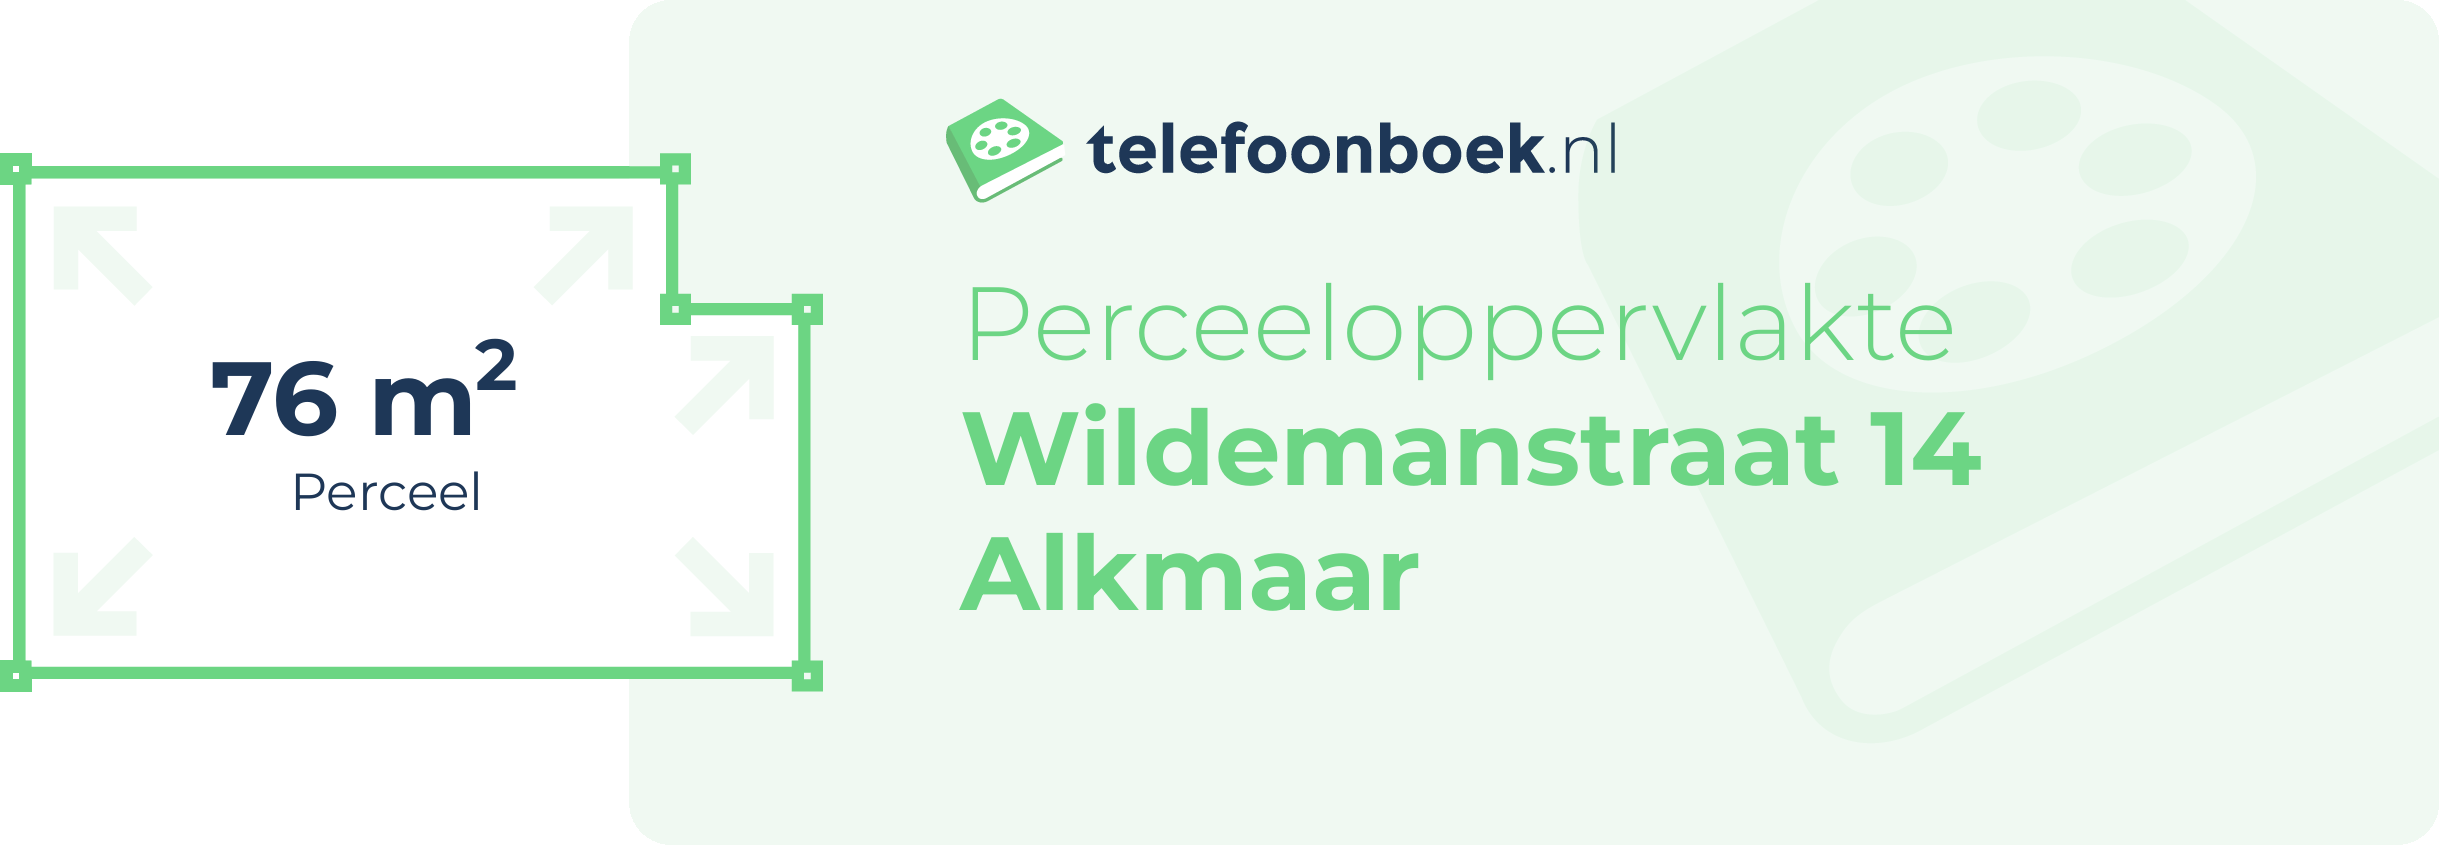 Perceeloppervlakte Wildemanstraat 14 Alkmaar